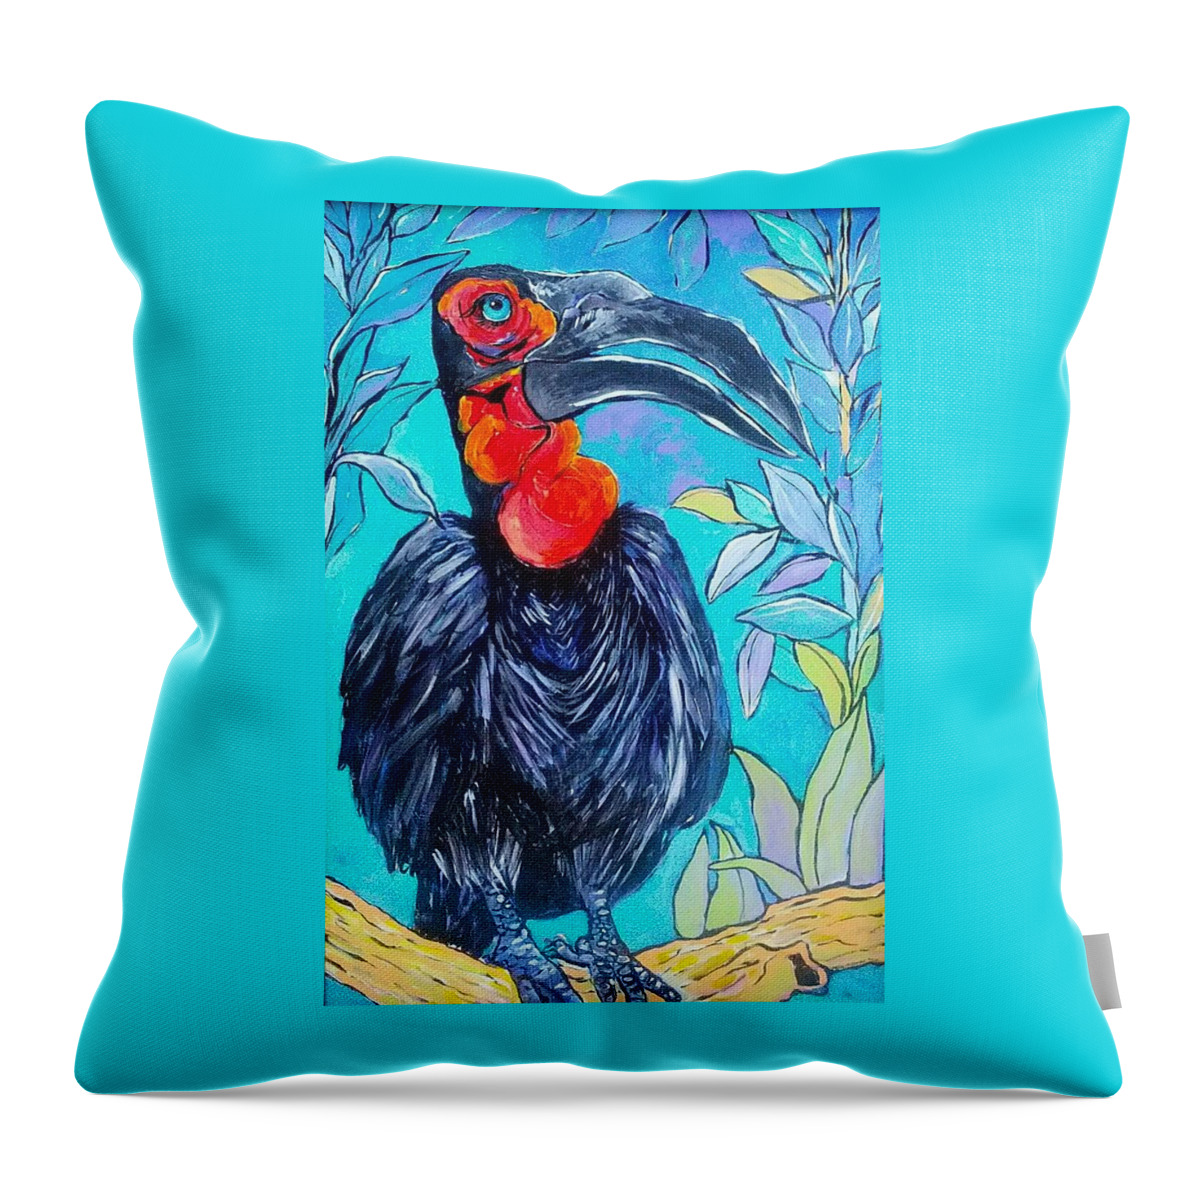 Hornbill Throw Pillow featuring the painting Hornbill by Arrin Freeman